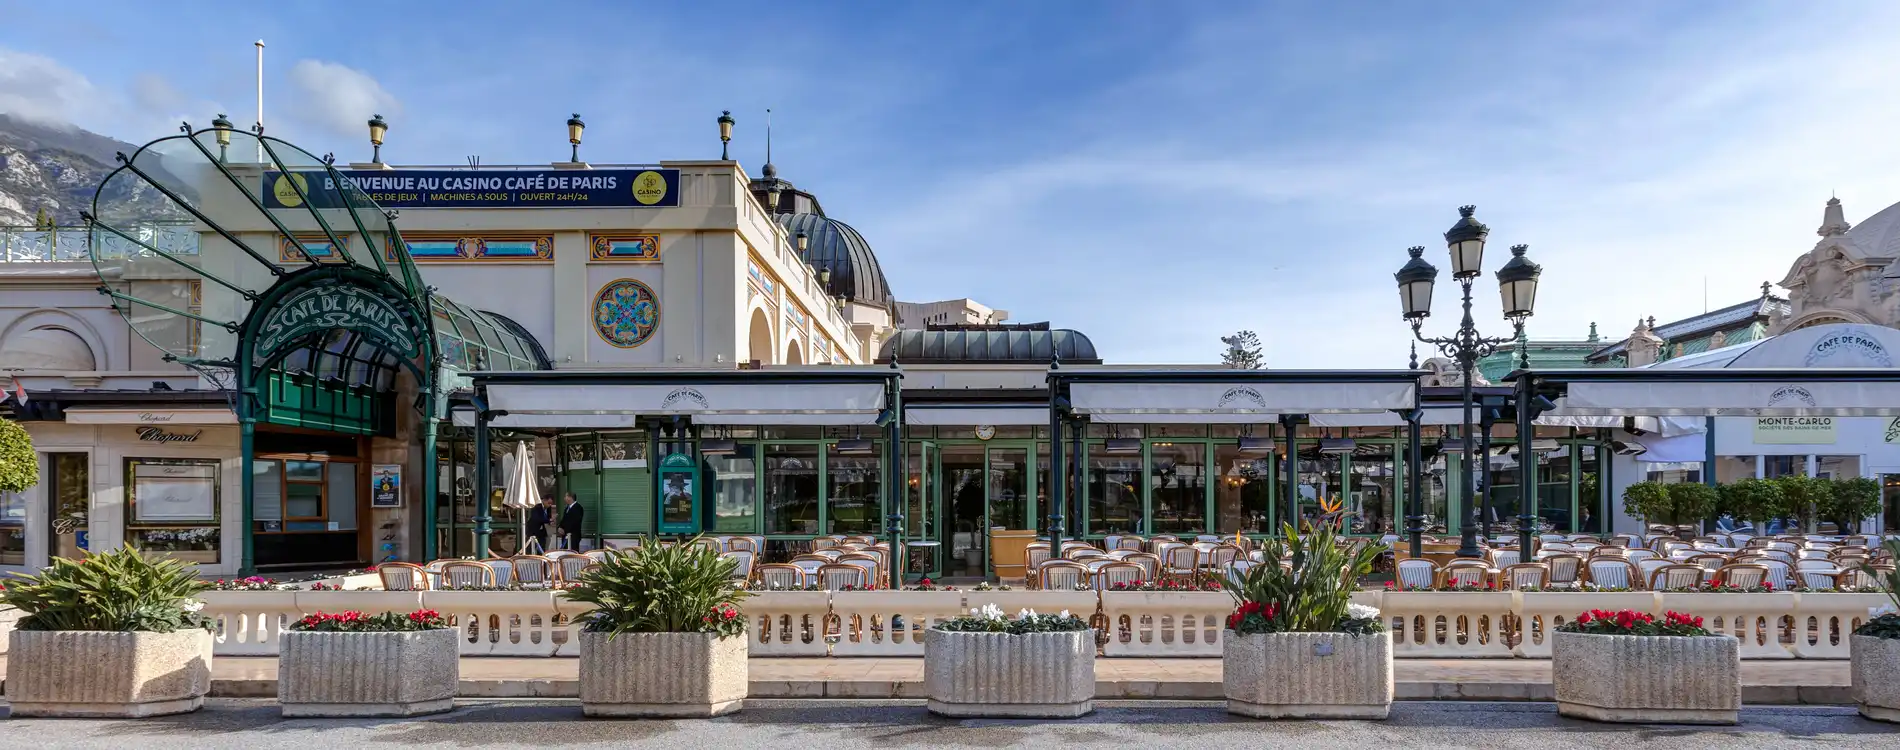 Le Café de Paris - La Brasserie